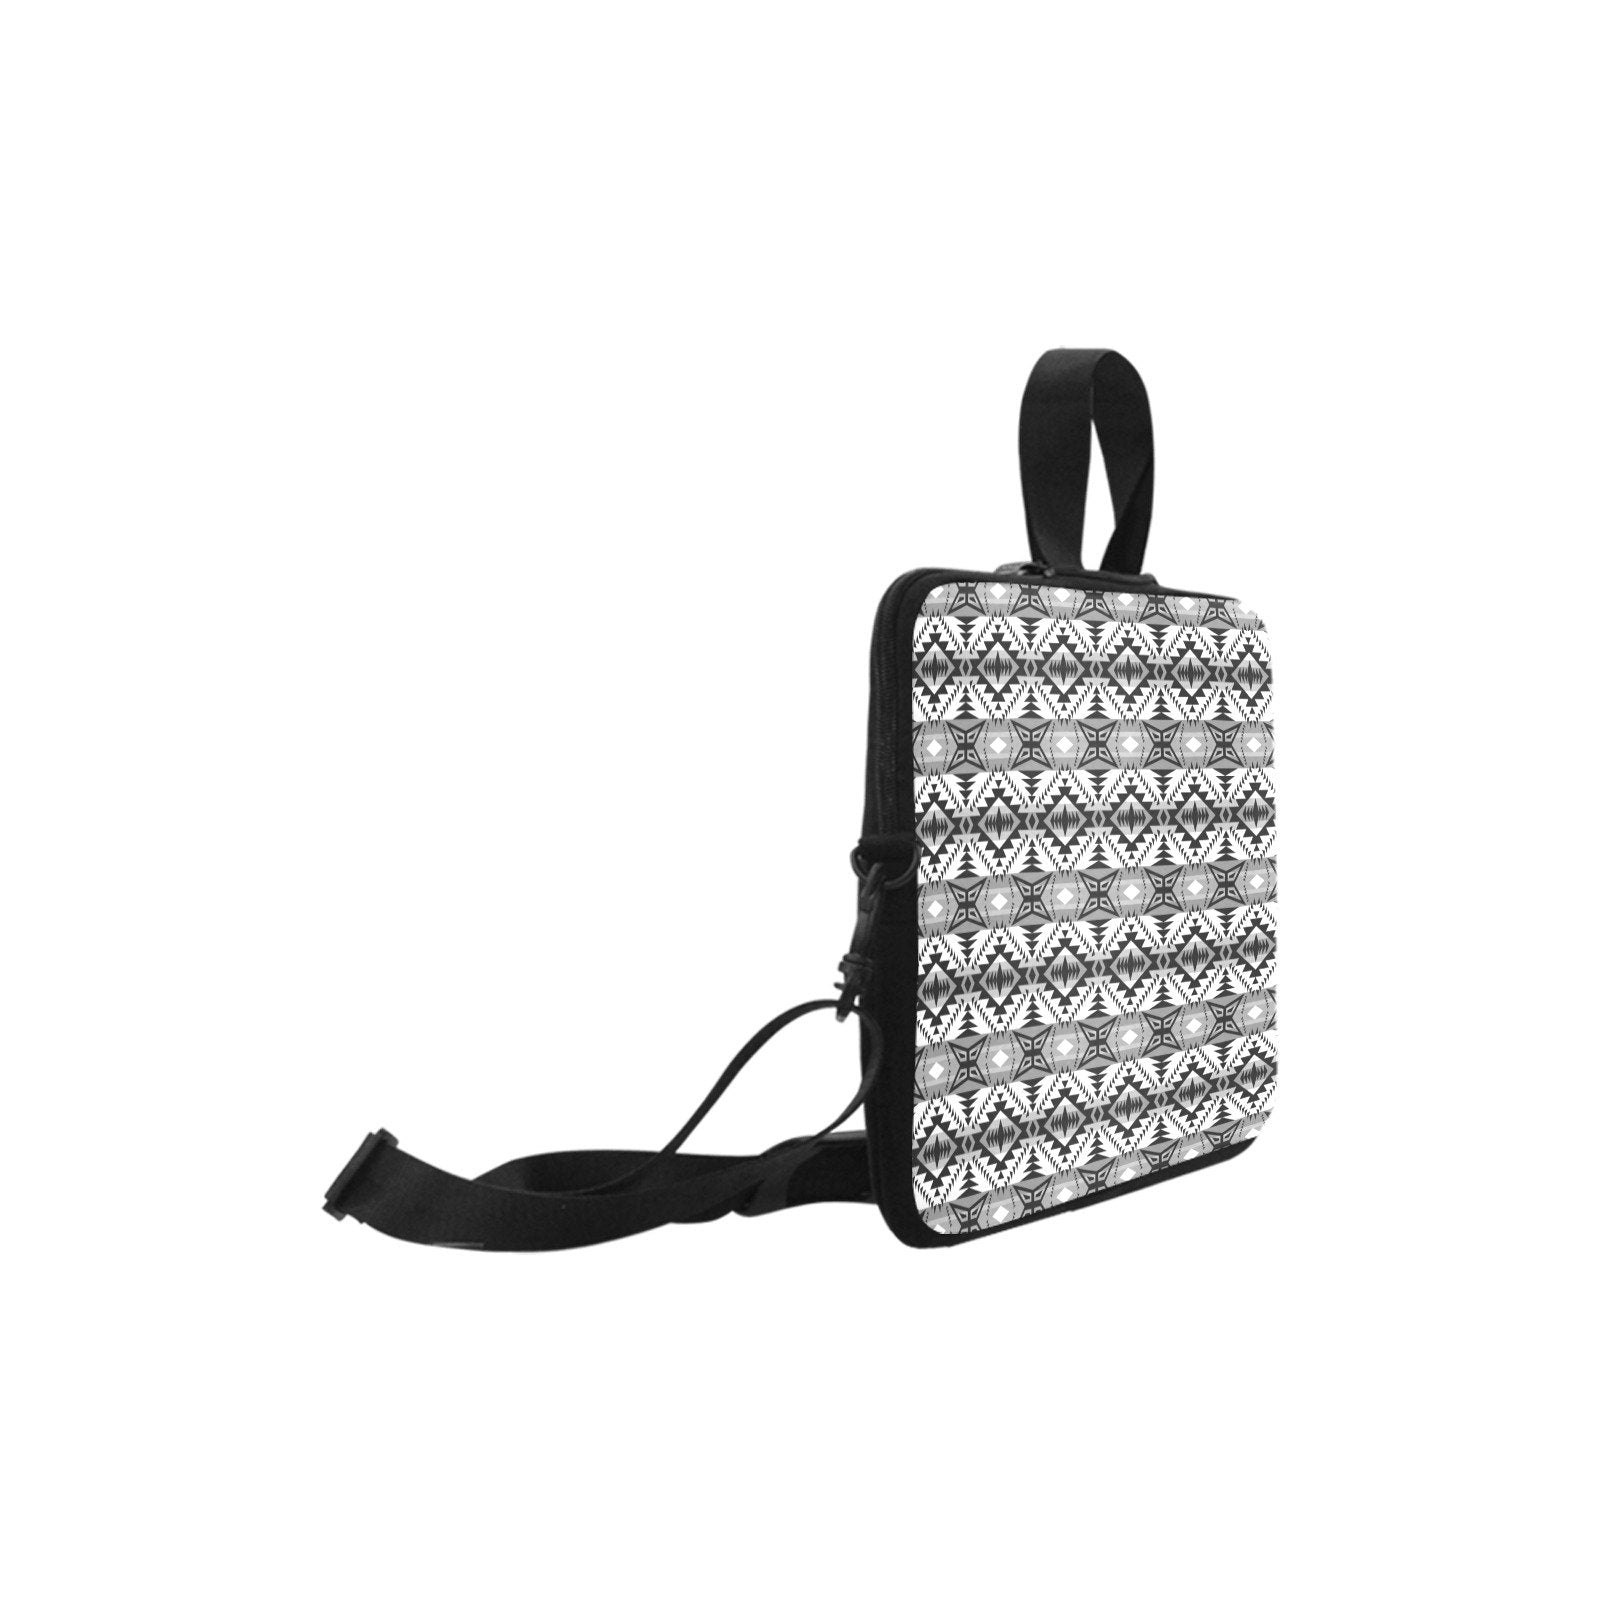 Mesa War Party Laptop Handbags 11" bag e-joyer 